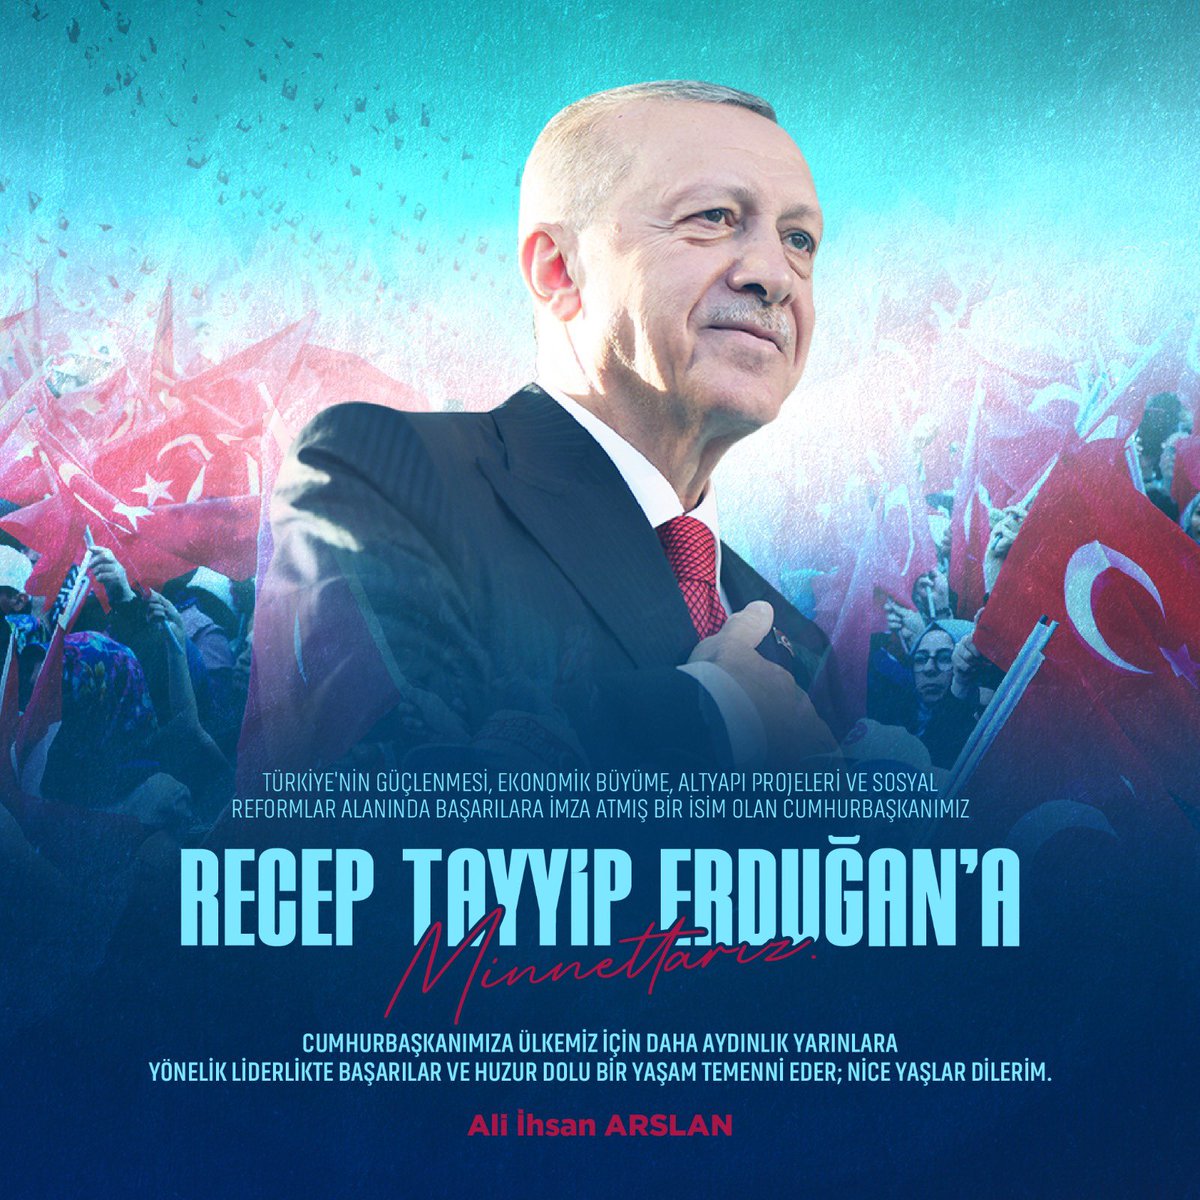 Türkiye'nin güçlenmesi, ekonomik büyüme, altyapı projeleri ve sosyal reformlar alanında başarılara imza atmış bir isim olan Cumhurbaşkanımız Recep Tayyip Erdoğan’a minnettarız. Cumhurbaşkanımıza ülkemiz için daha aydınlık yarınlara yönelik liderlikte başarılar ve huzur dolu bir…